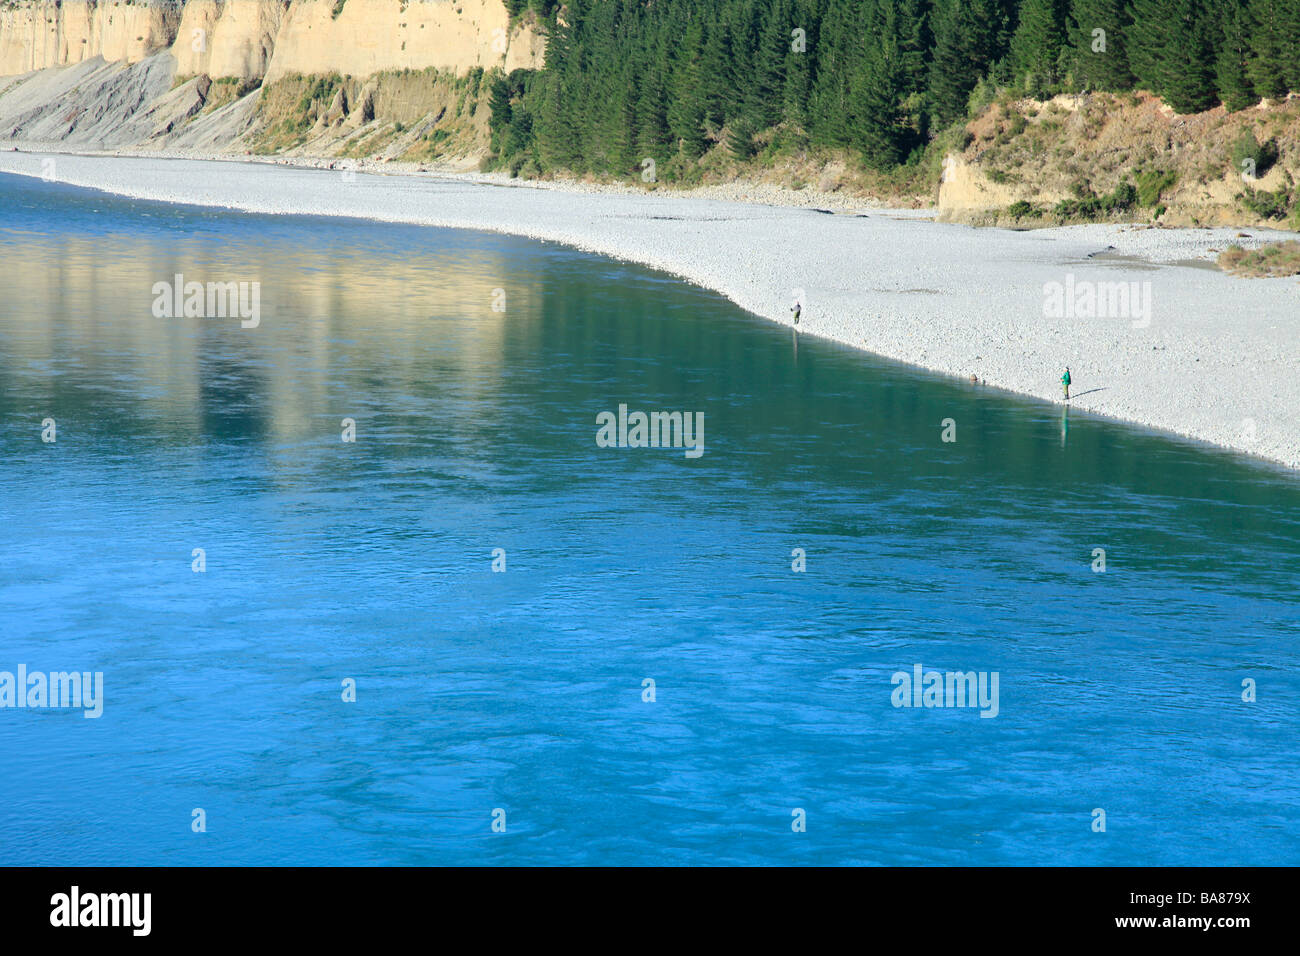 La pesca del salmón en el azul glacial agua fresca del río Rakaia, Canterbury, Isla del Sur, Nueva Zelanda Foto de stock